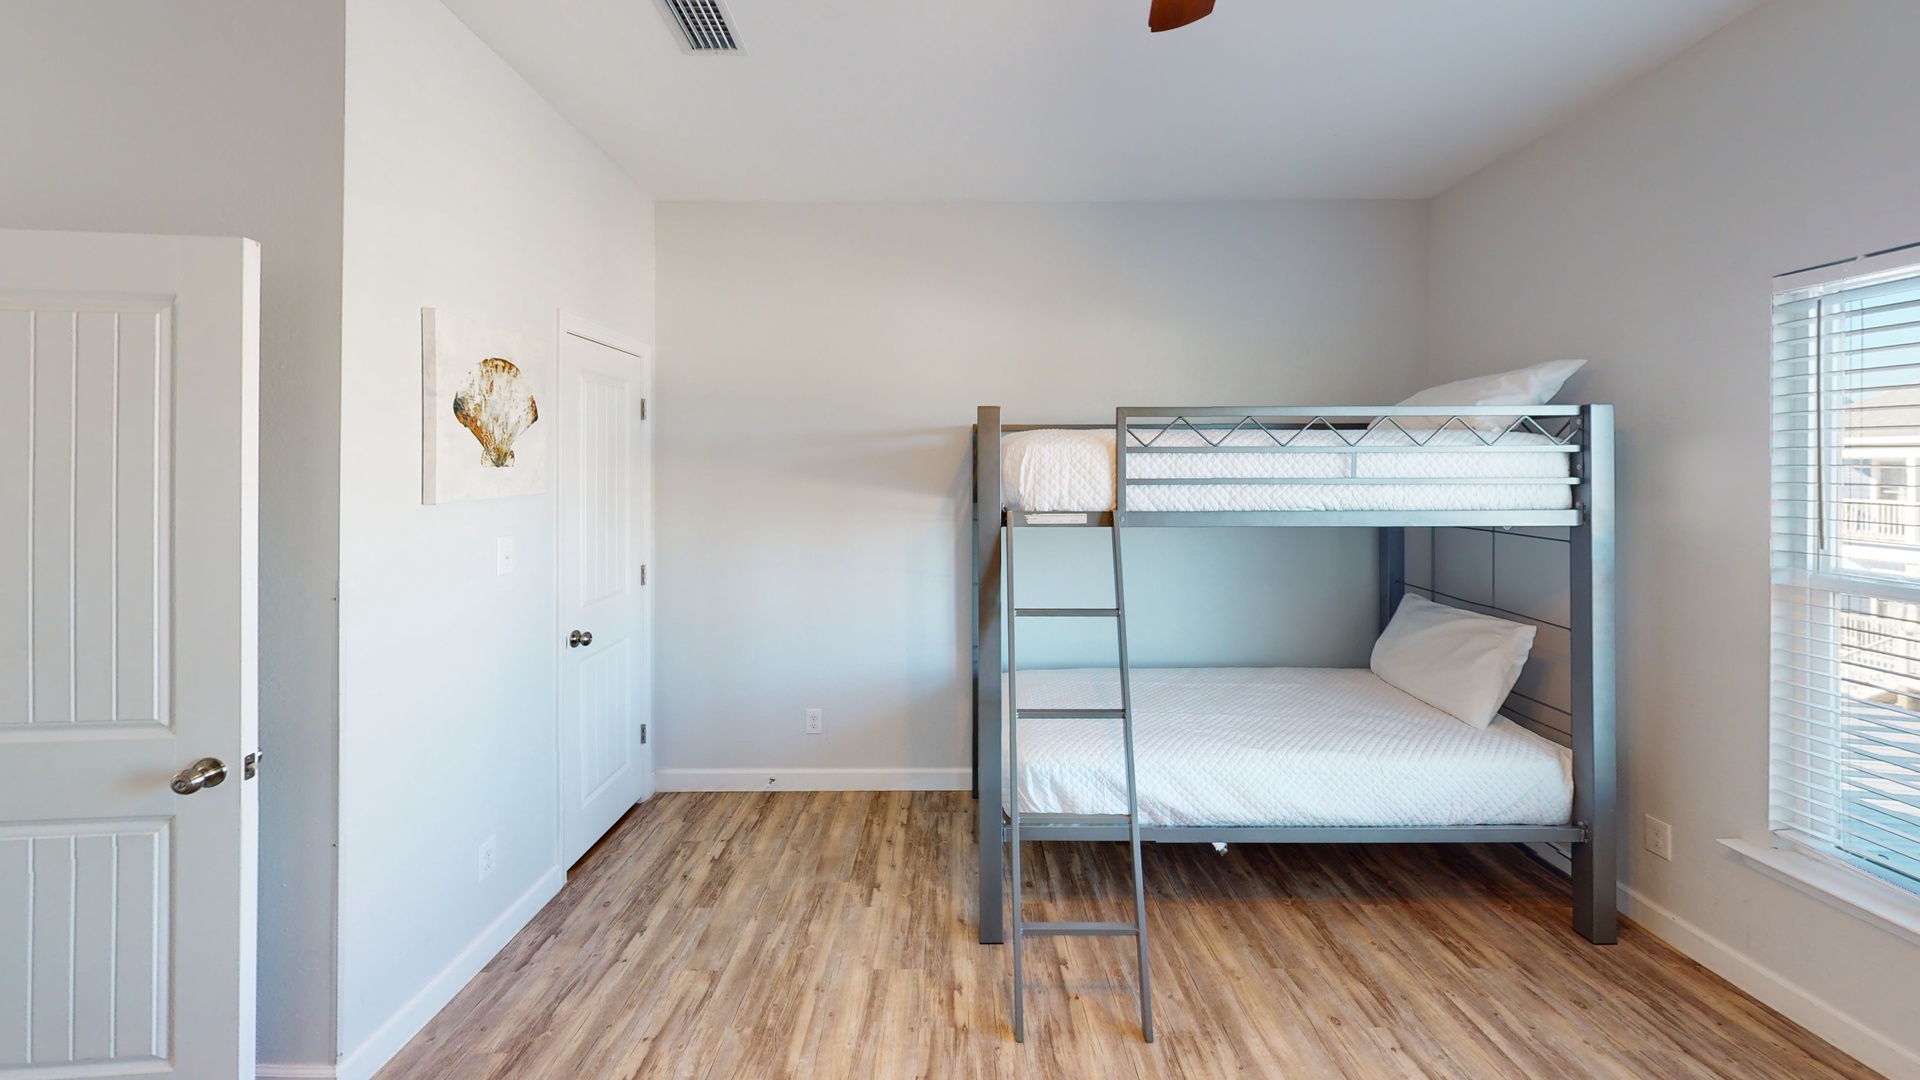 Bedroom 4 has 2 separate Twin bunk beds